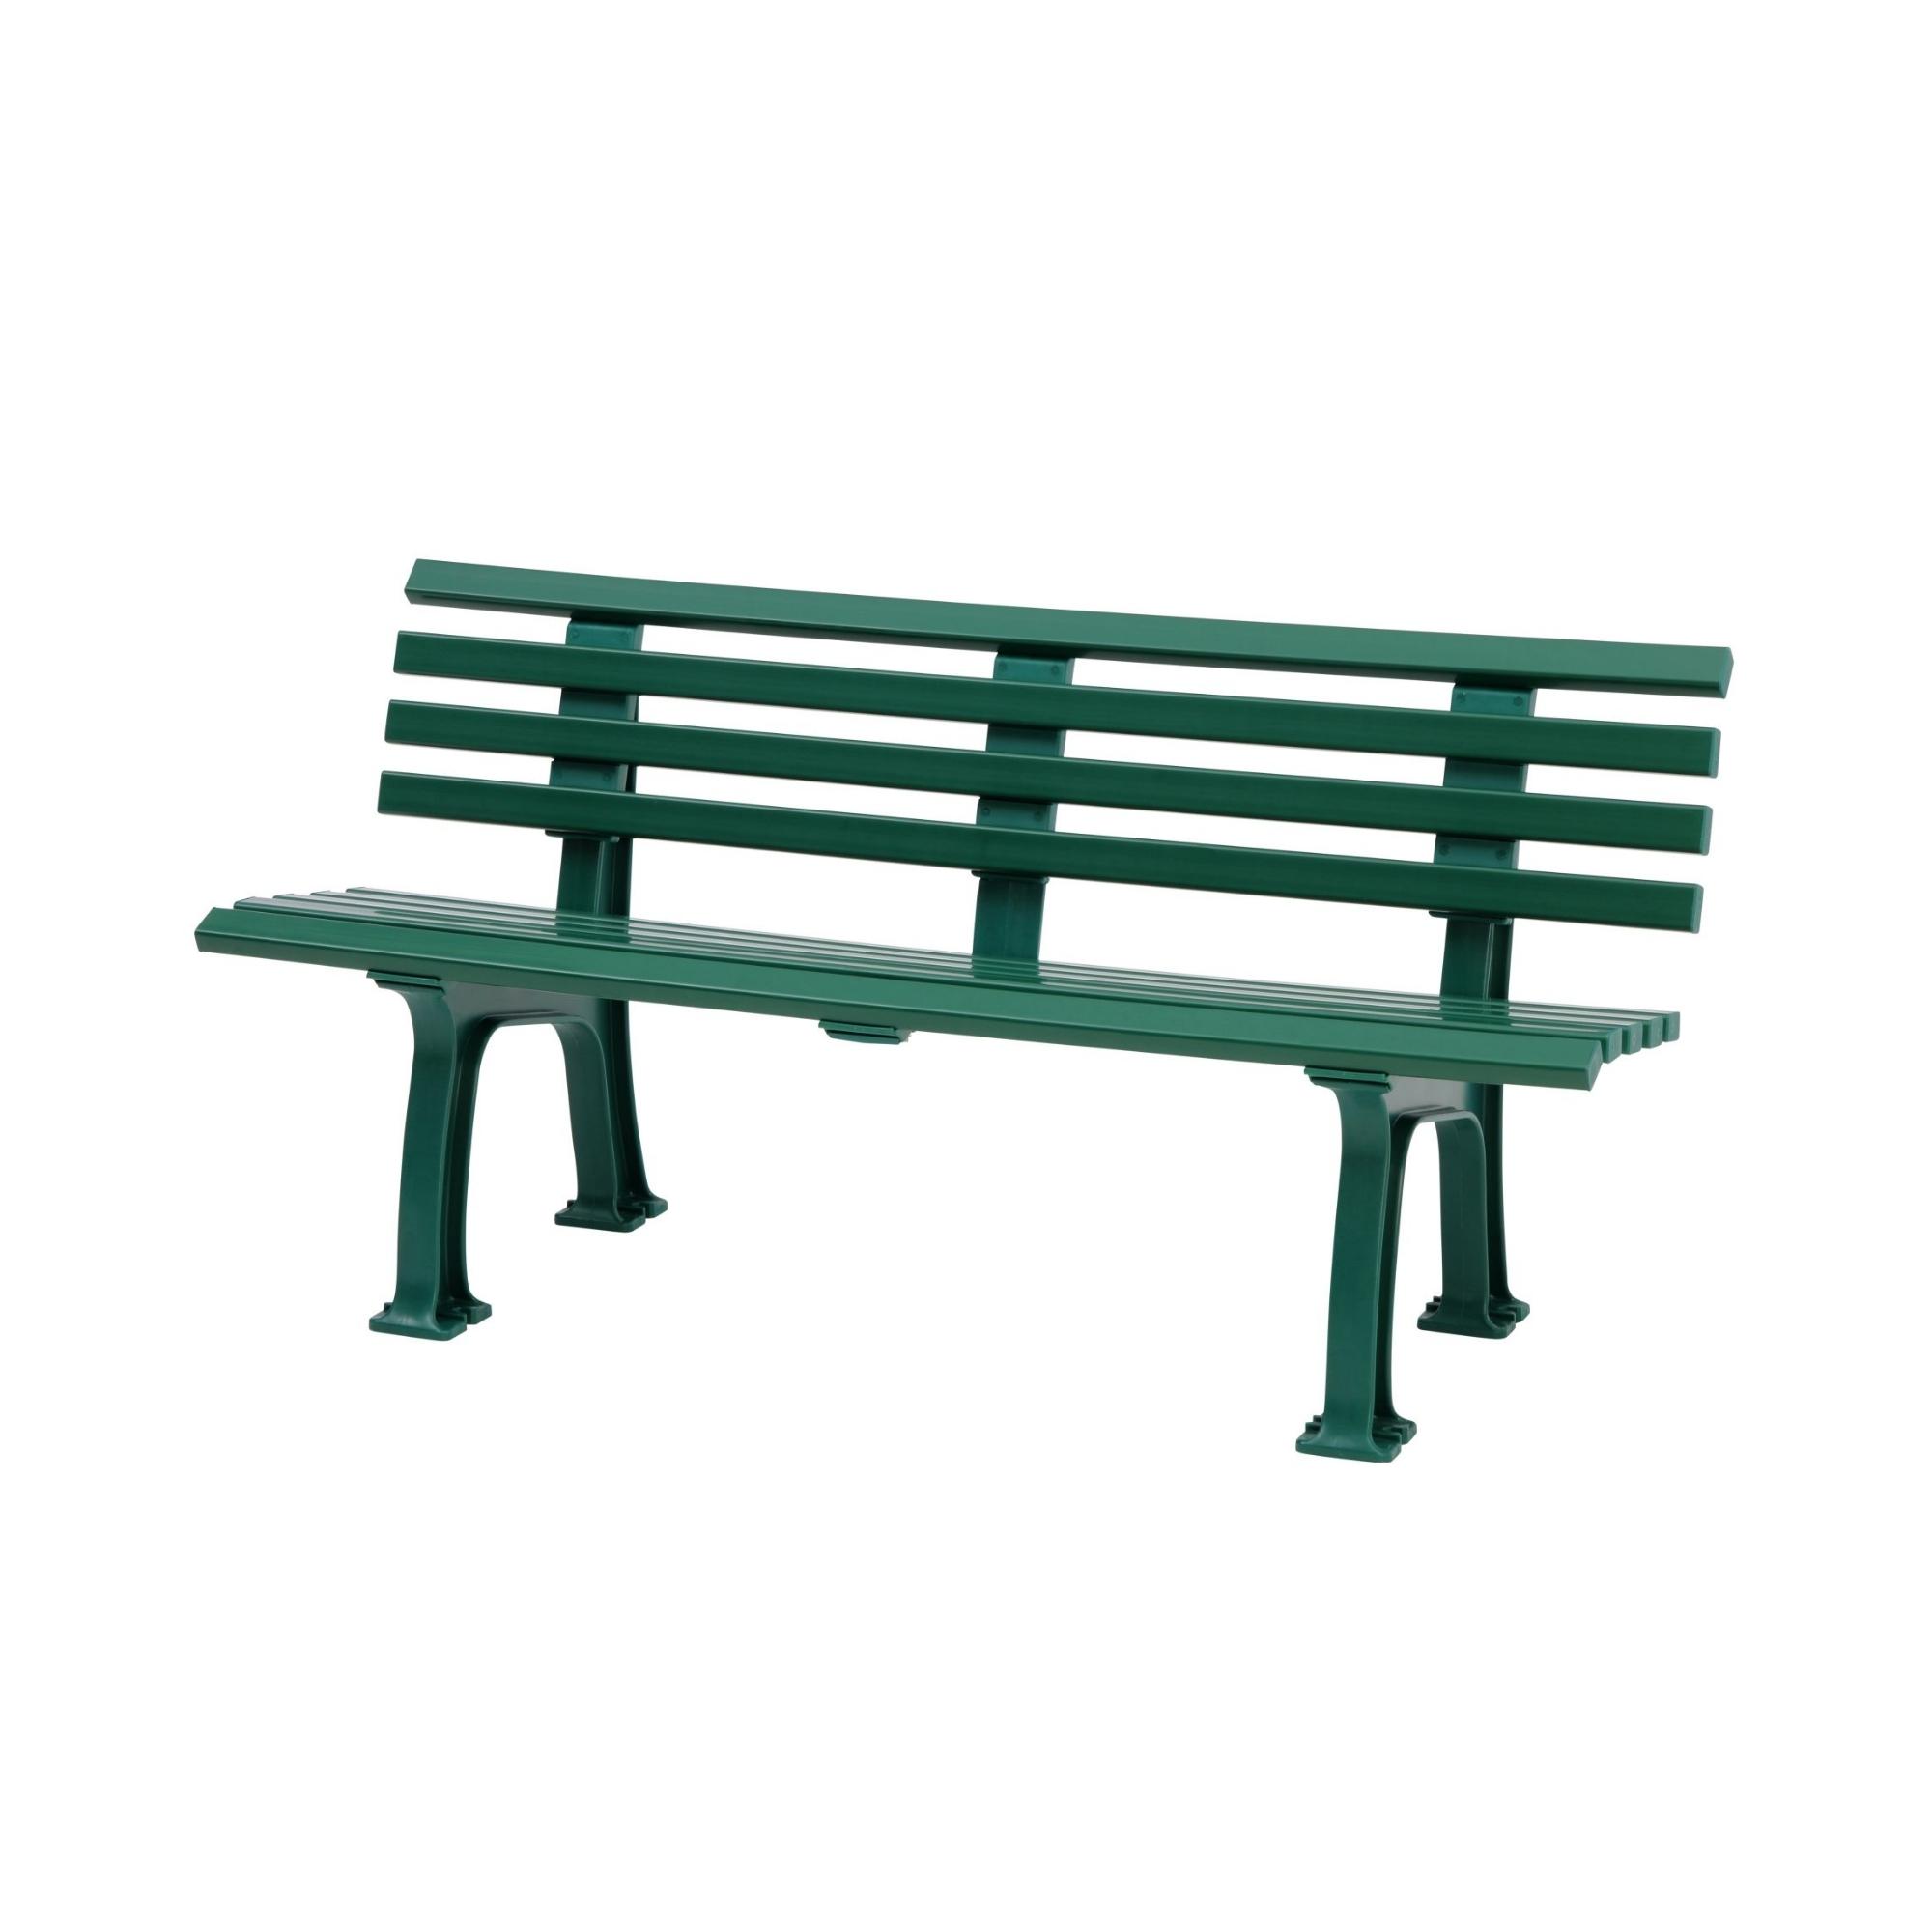 Gartenbank Antigua | 3-Sitzer | Grün | HxBxT 74x150x54cm | Witterungs- & UV-beständiger Kunststoff | Parkbank Sitzbank Außenbereich Garten Balkon Terrasse